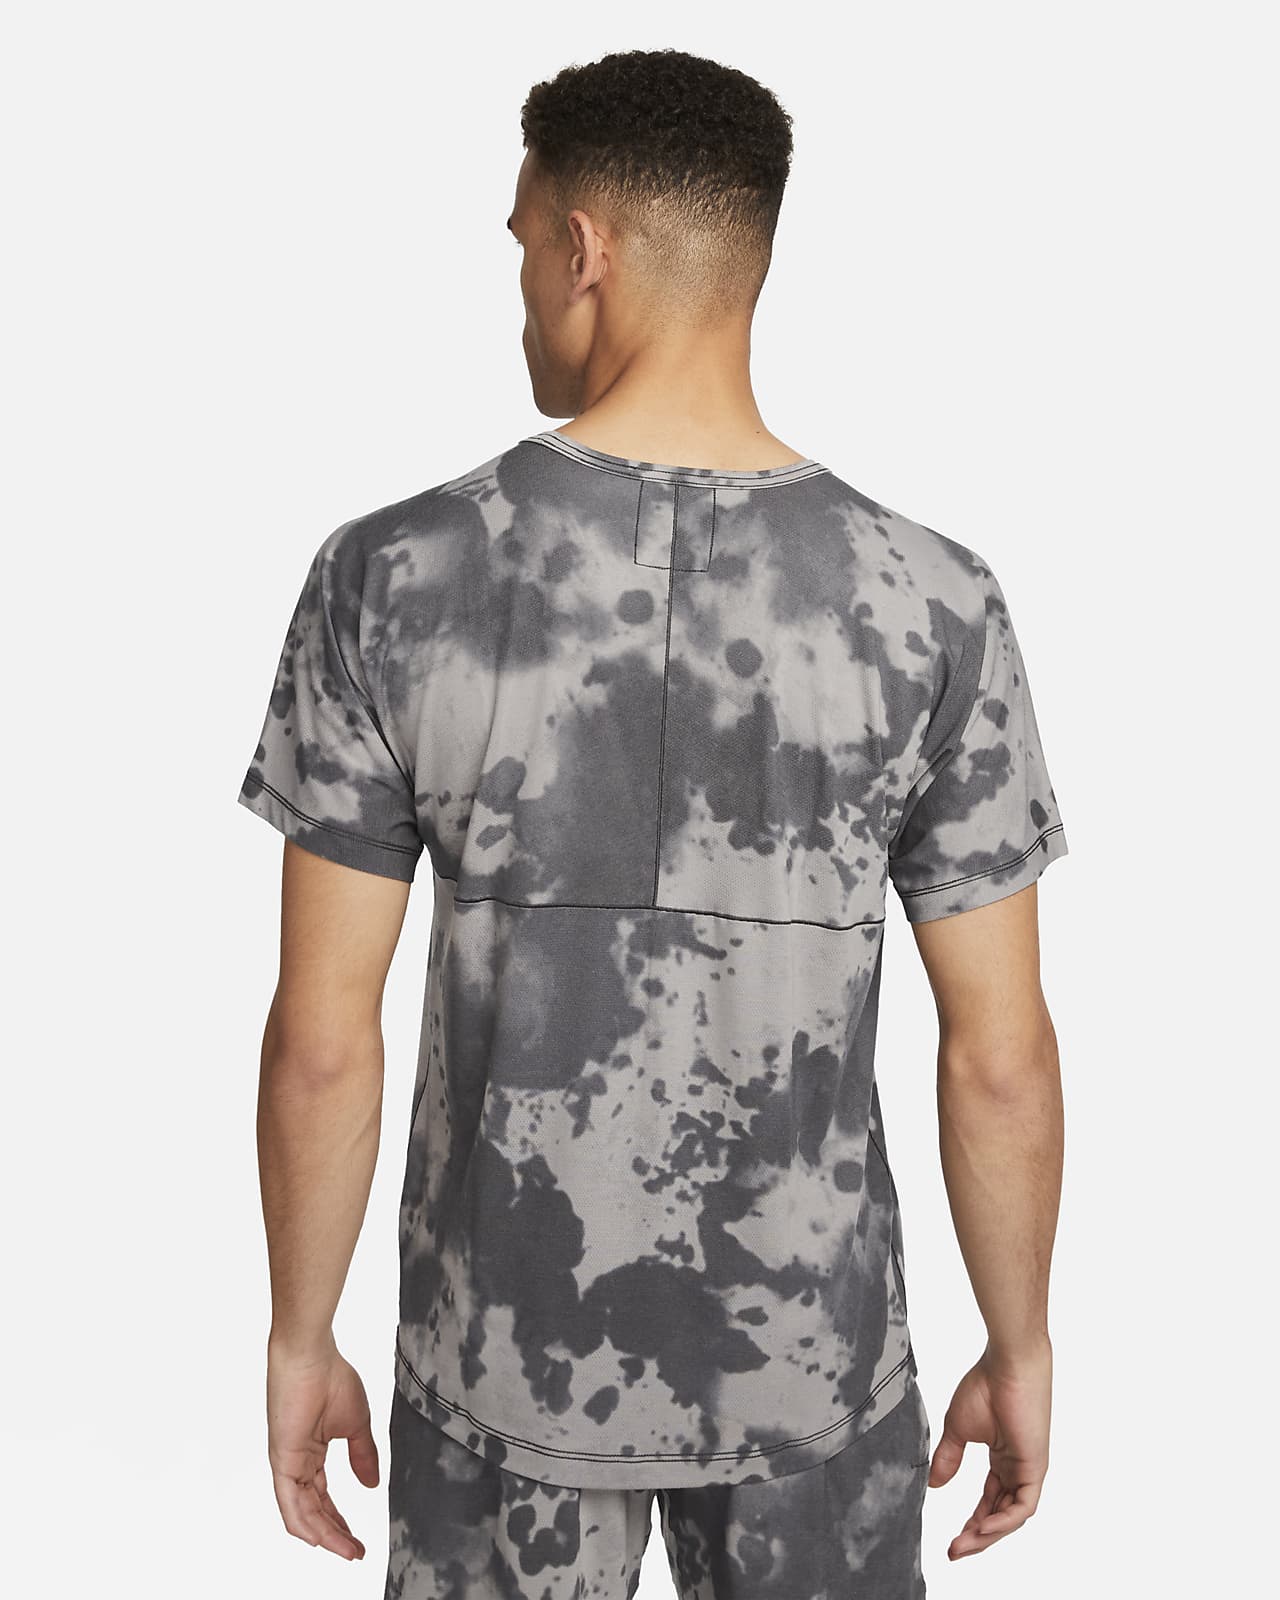 Nike Mens Dry Yoga T-Shirt - Grey